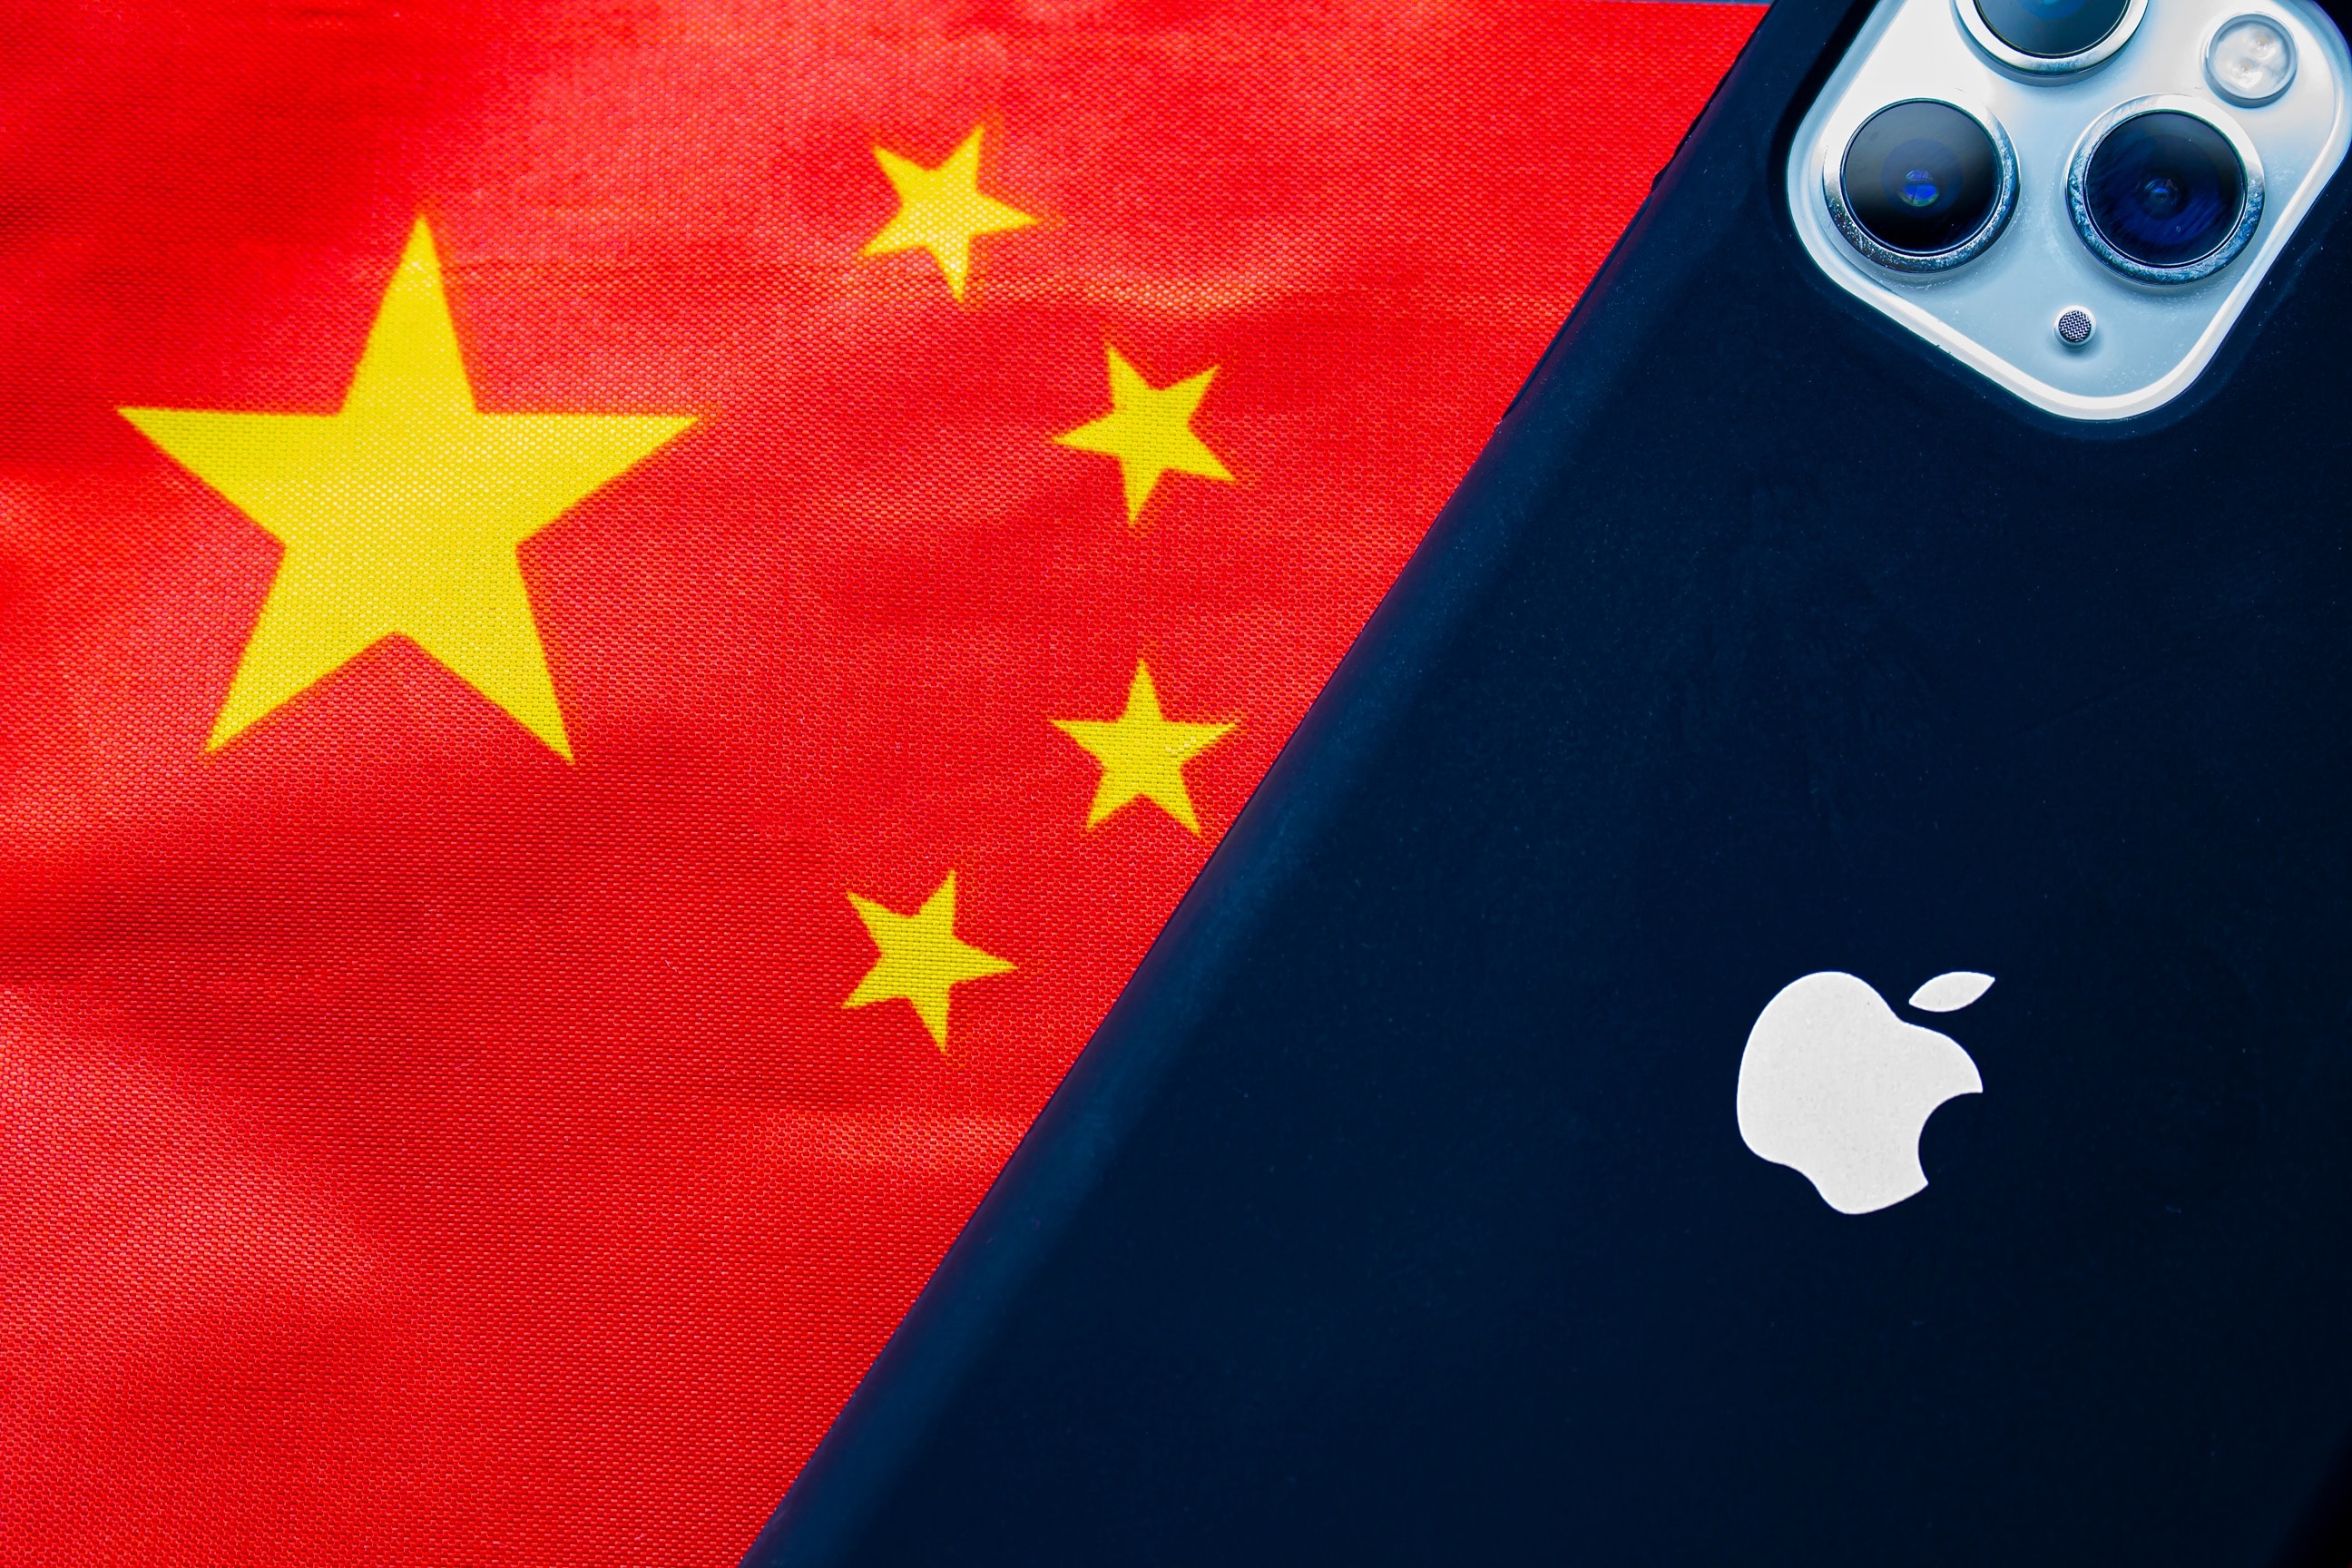 Bandeira da China com iPhone